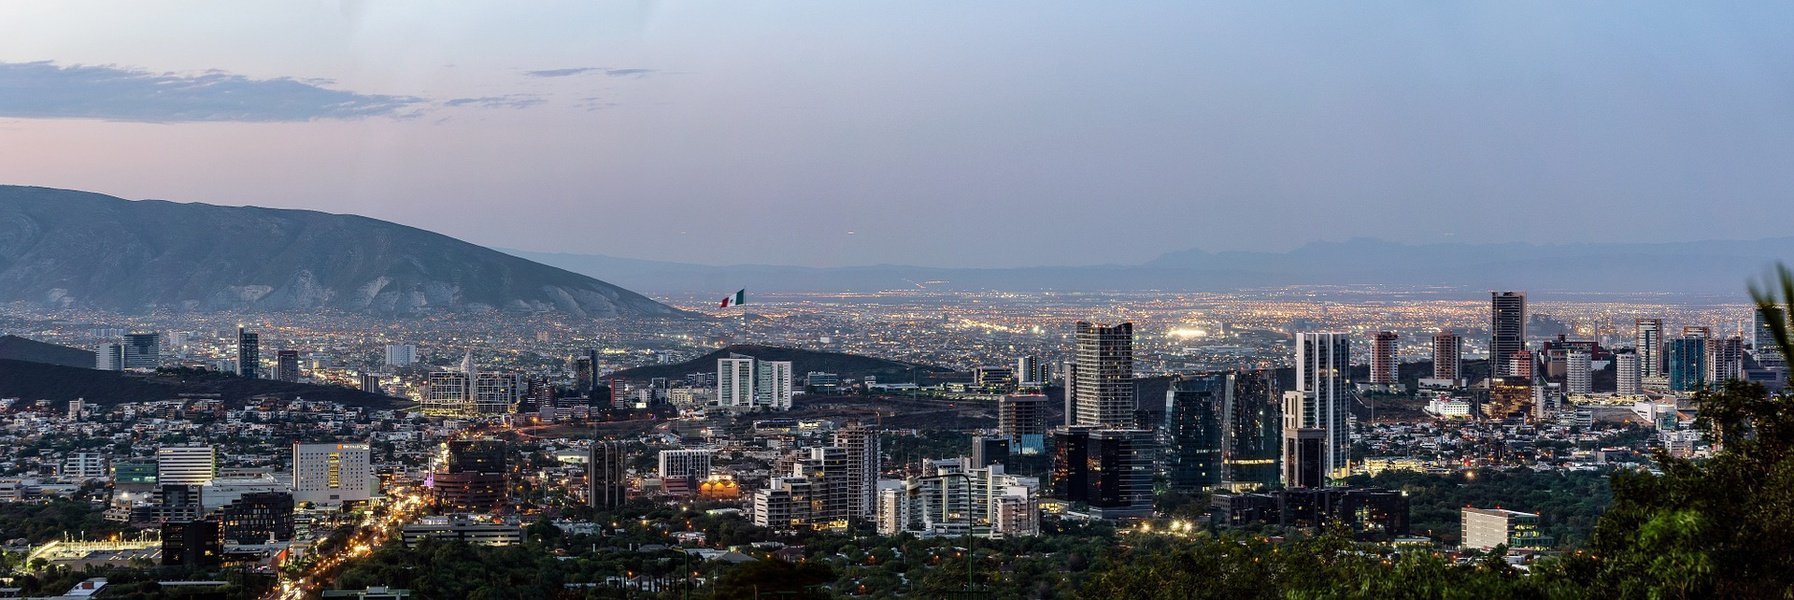 Descubre la capital de nuevo león alojándote en uno de los mejores hoteles en monterrey méxico Hotel Urban Aeropuerto Ciudad de México